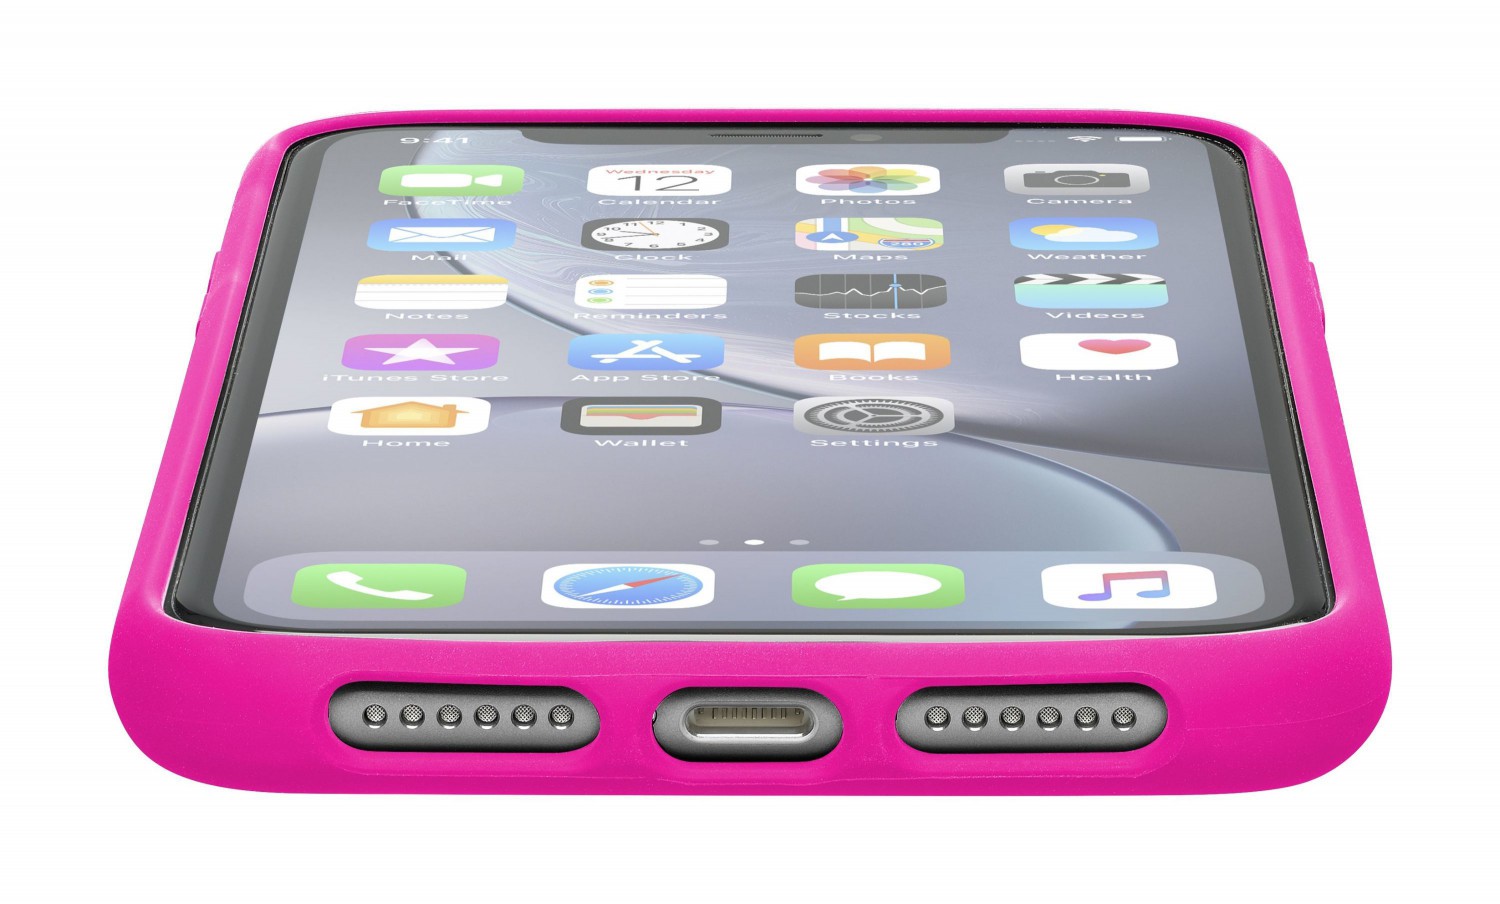 Silikonové pouzdro CellularLine SENSATION pro Apple iPhone XR, růžový neon